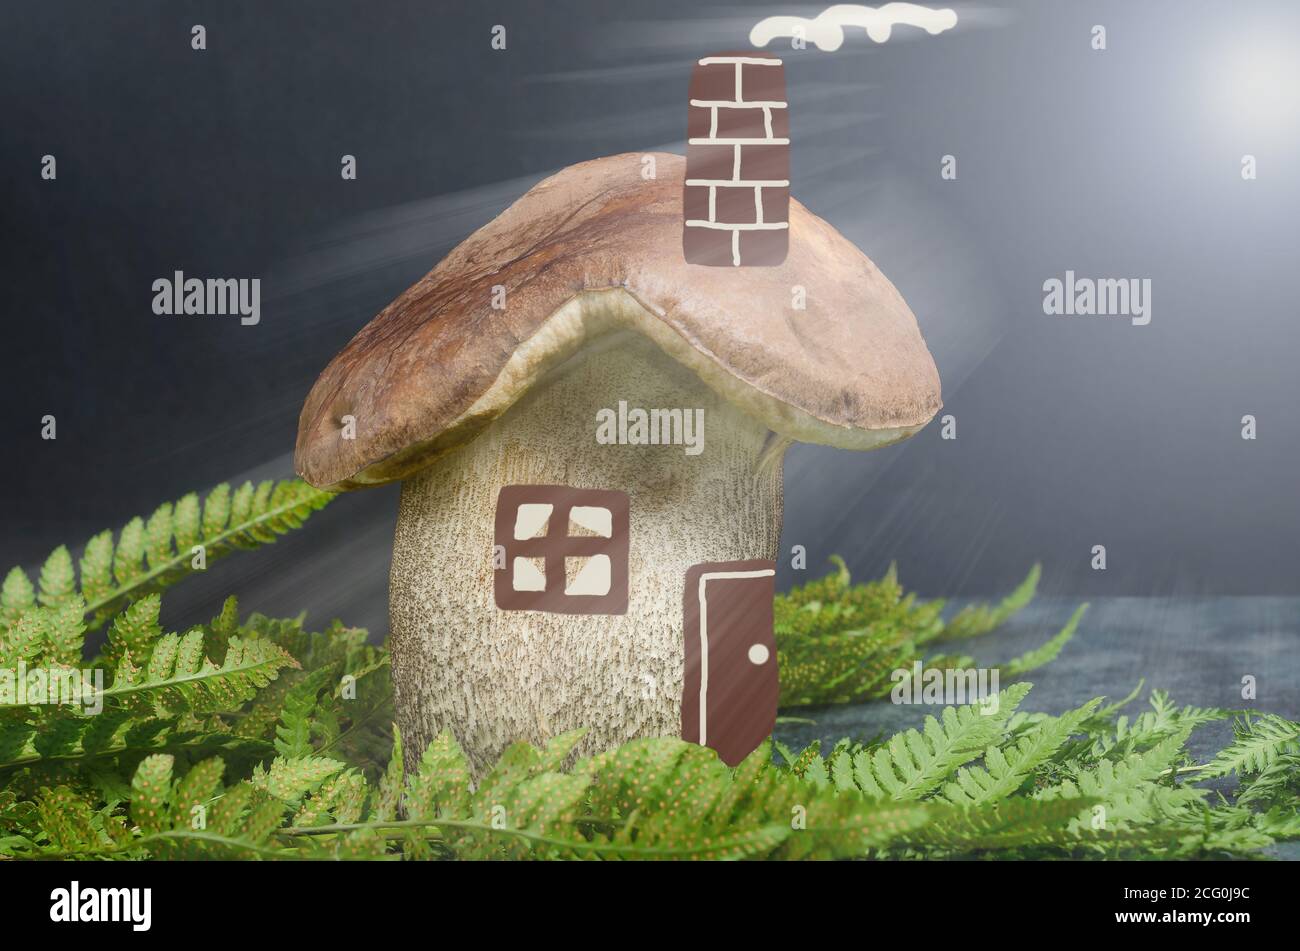 Un grande fungo forestale sotto forma di una casa con finestre dipinte e porte con travi a vista, il concetto di acquistare una casa, ipoteca Foto Stock